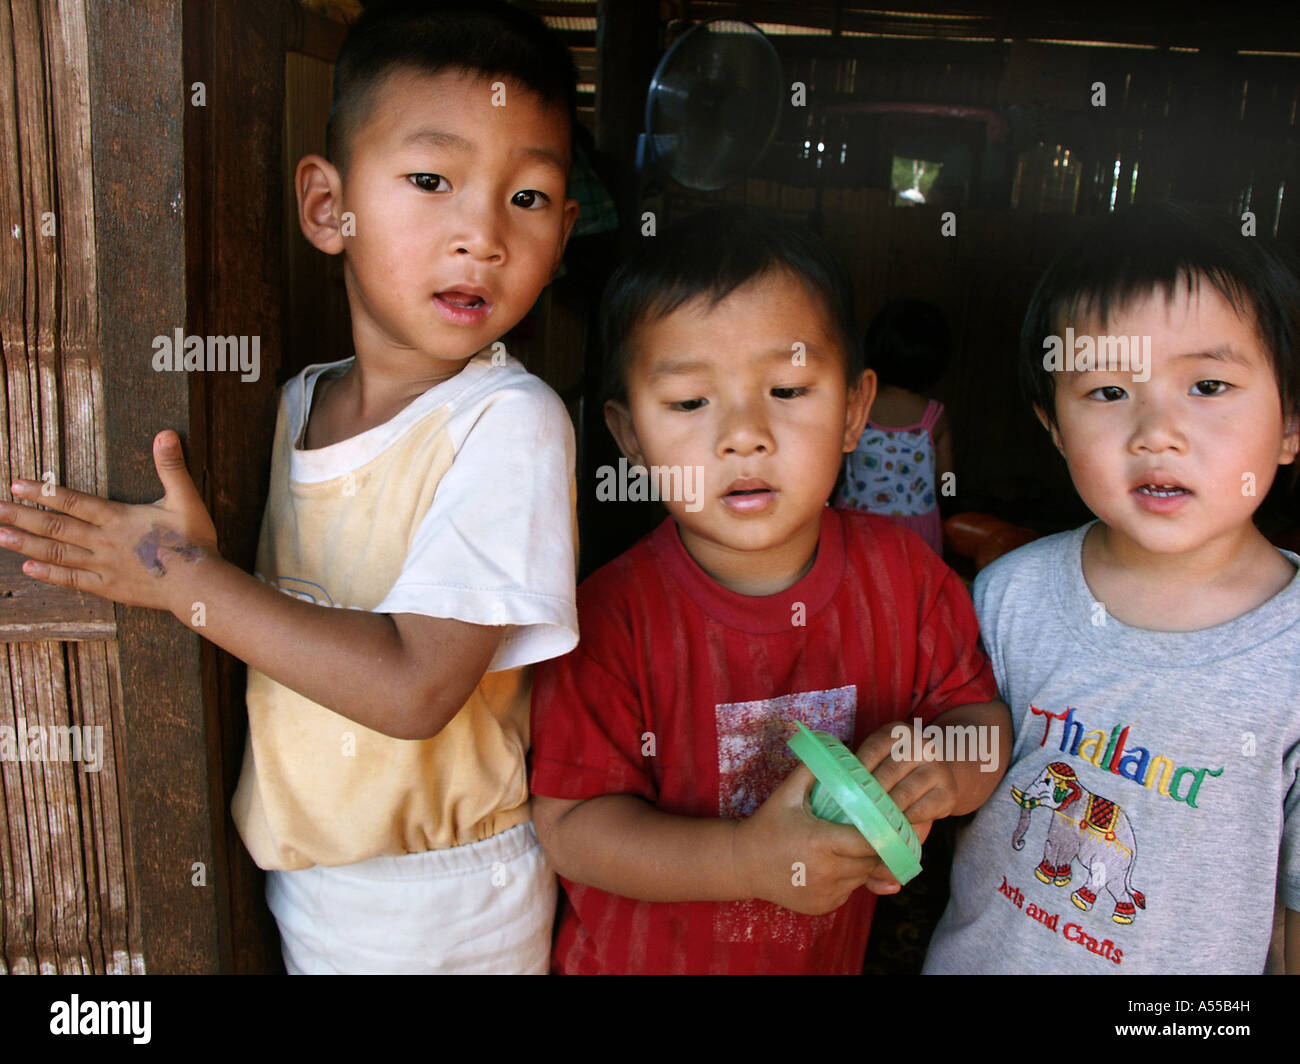 Painet2805 ip 9605 niños varones Tailandia kachin ban mai samaki país menos desarrollado económicamente nación en desarrollo Foto de stock